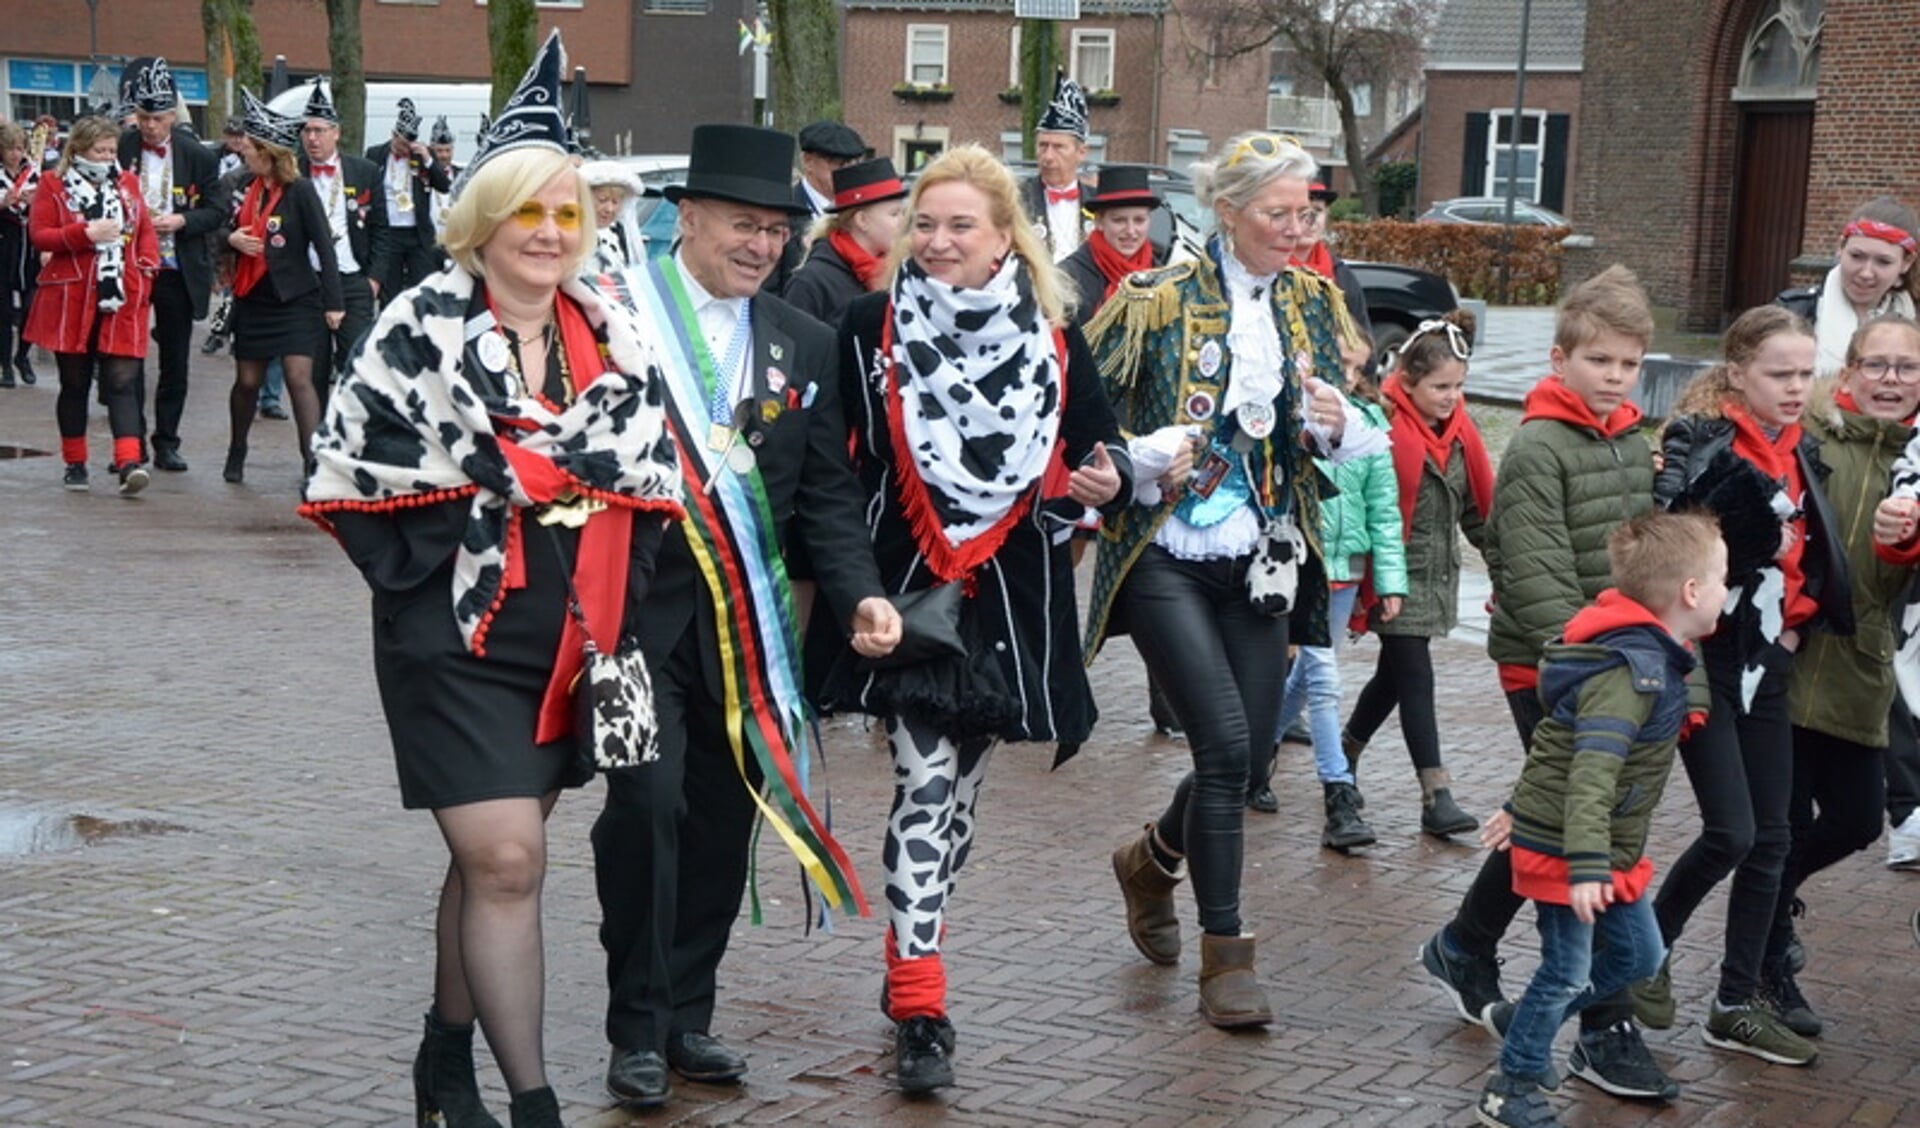 Burgemeester Van Rooij in goed gezelschap naar Schorsbos in Schijndel